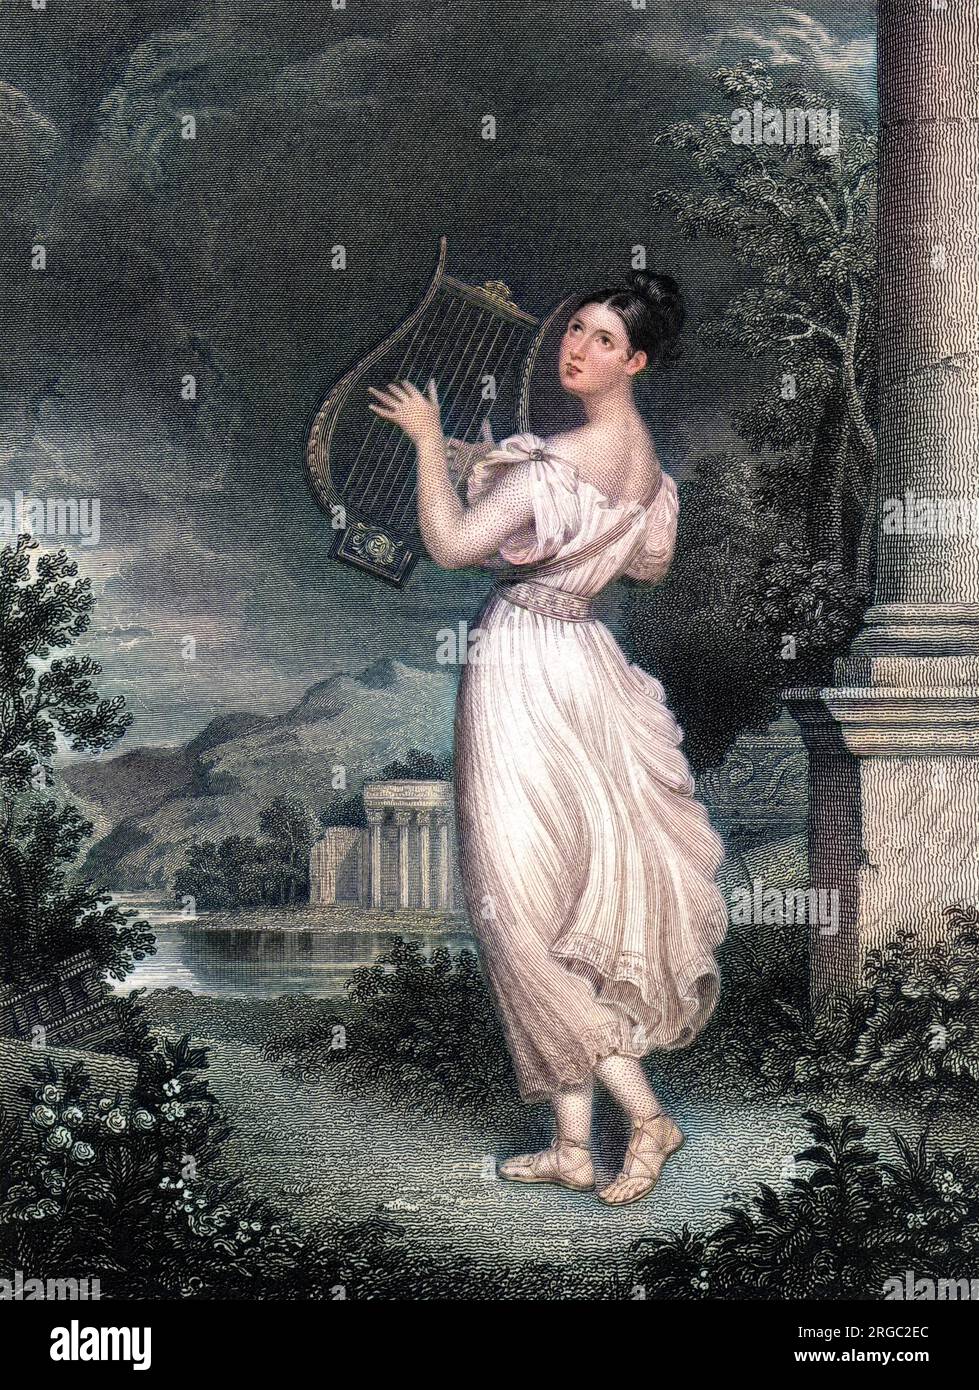 ELIZABETH Gräfin von HARRINGTON (Neongrün), Ehefrau von Leicester Stanhope, Fünfter graf: Sie wird romantisch dargestellt, wie sie ihre Lyre im Mondlicht stampft. Stockfoto